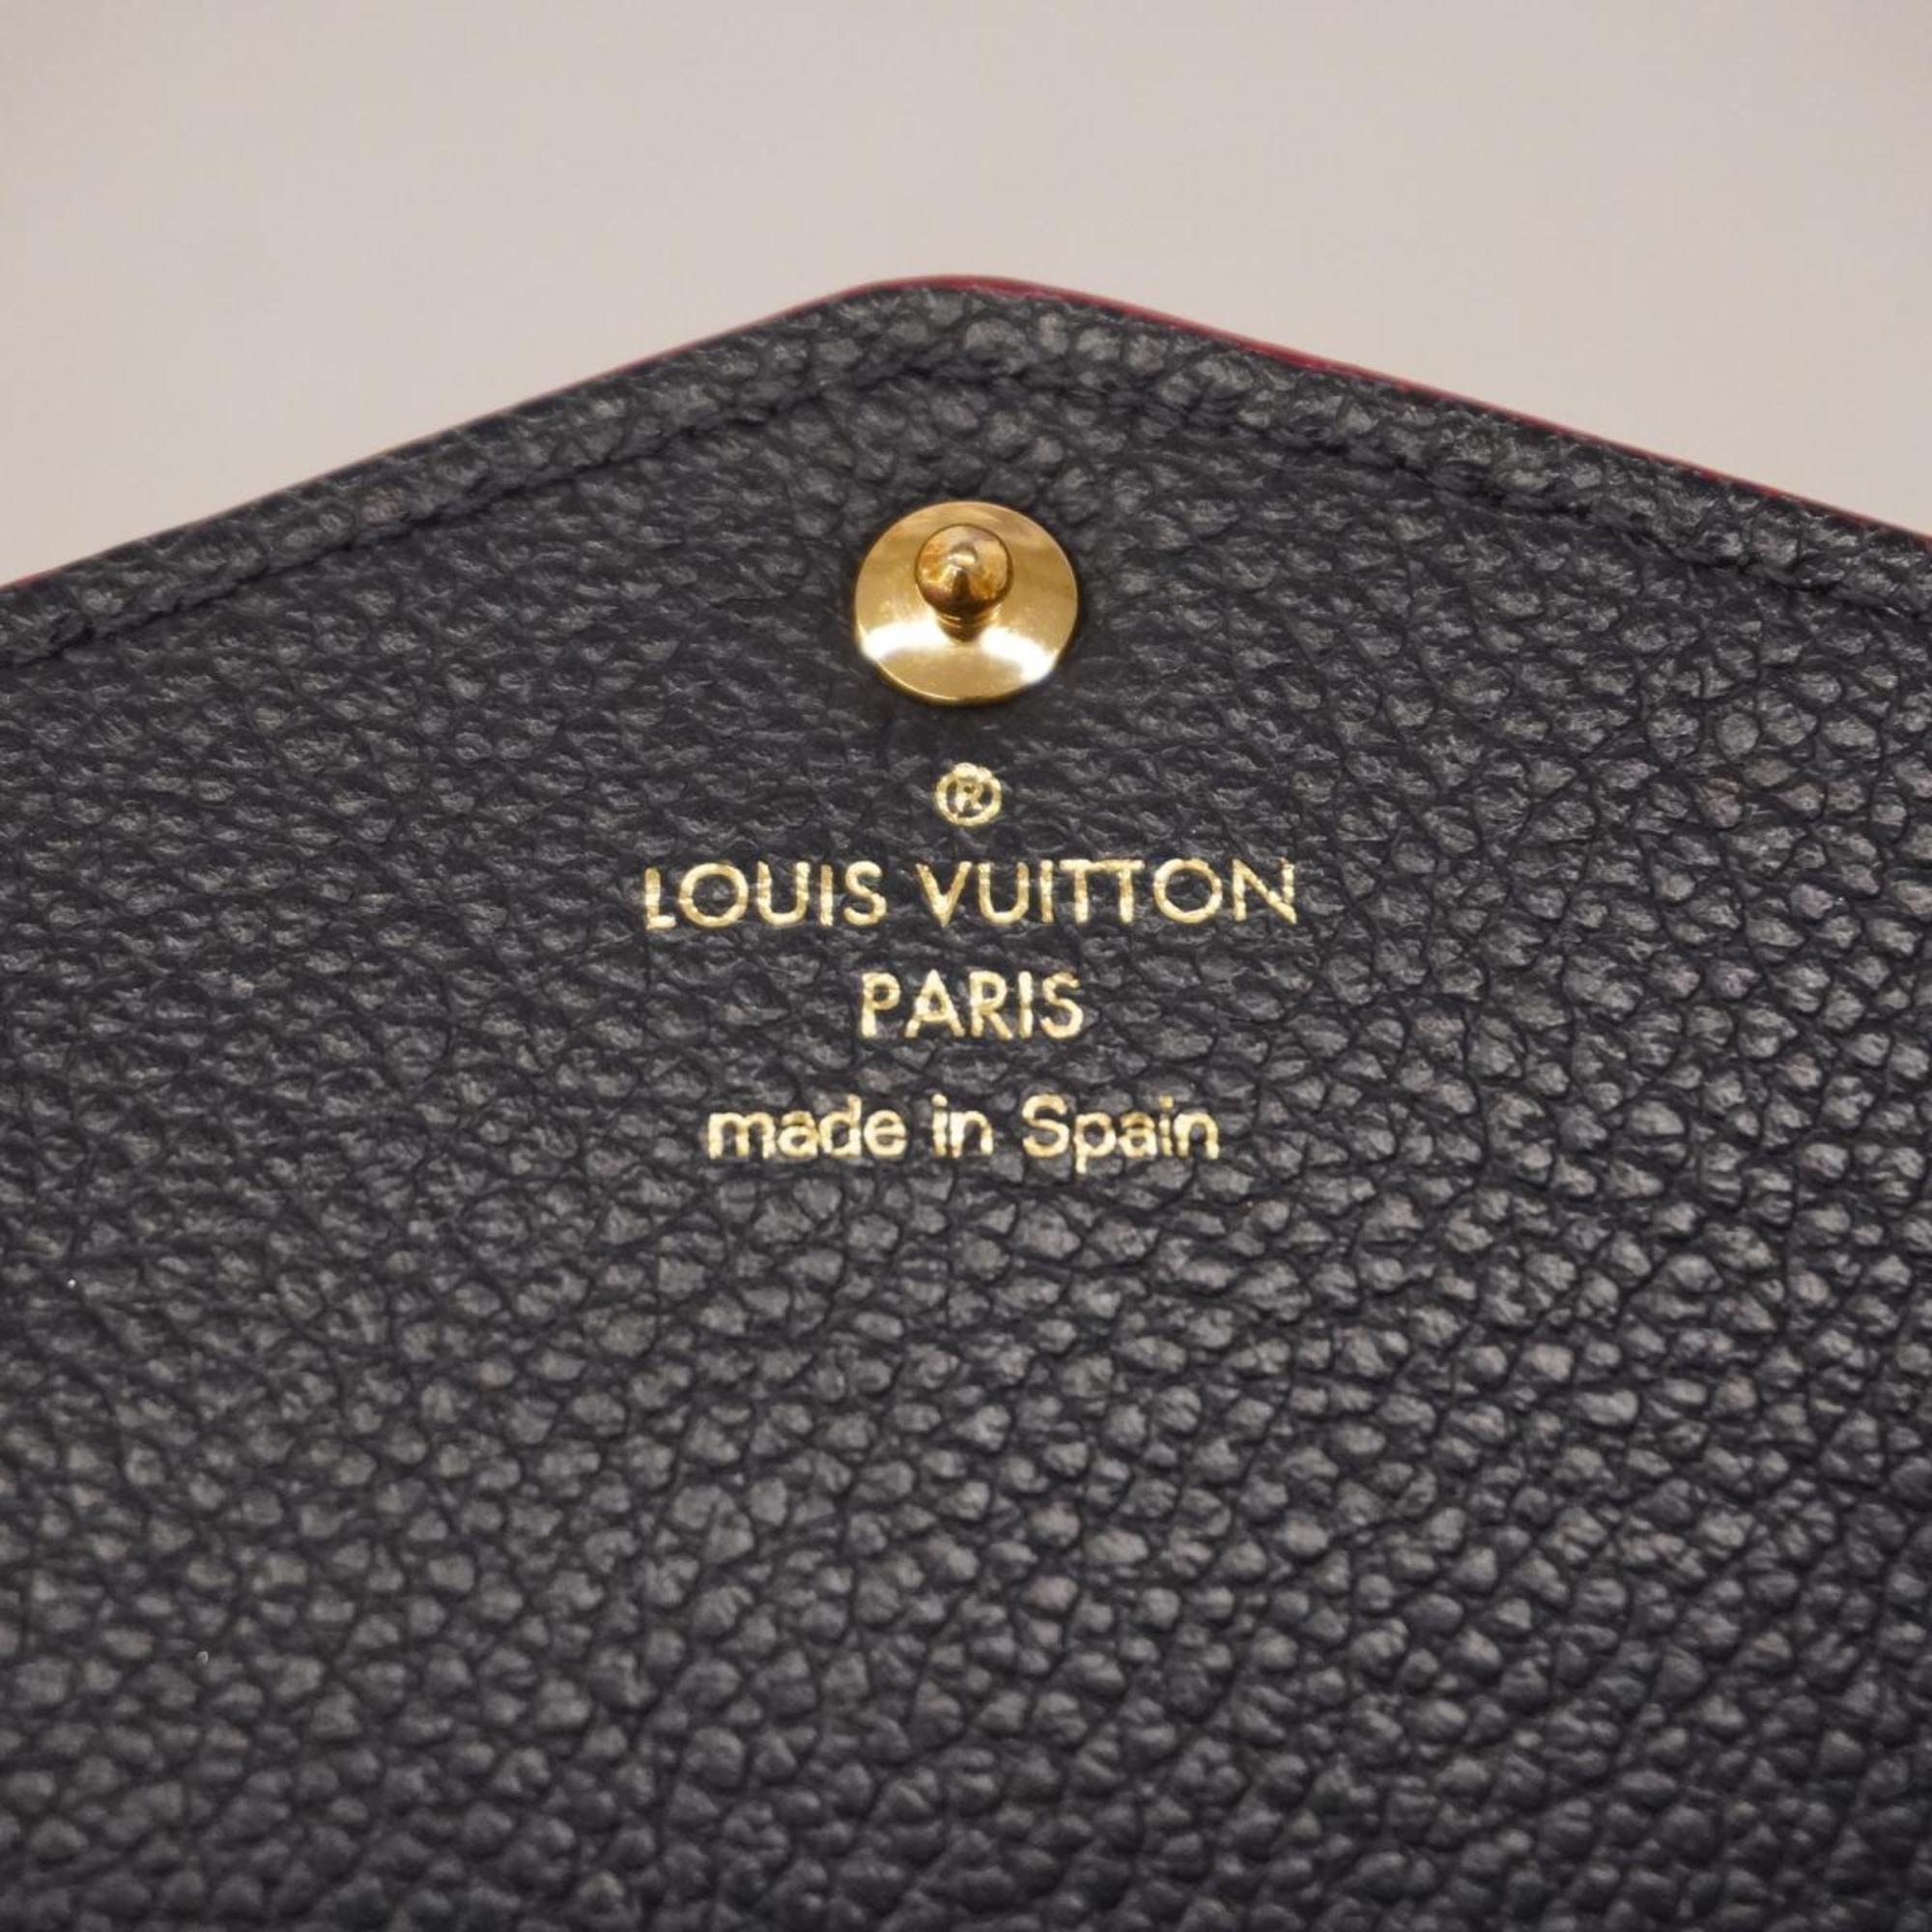 Louis Vuitton Long Wallet Monogram Empreinte Portefeuille Sarah M62125 Marine Rouge Men's Women's